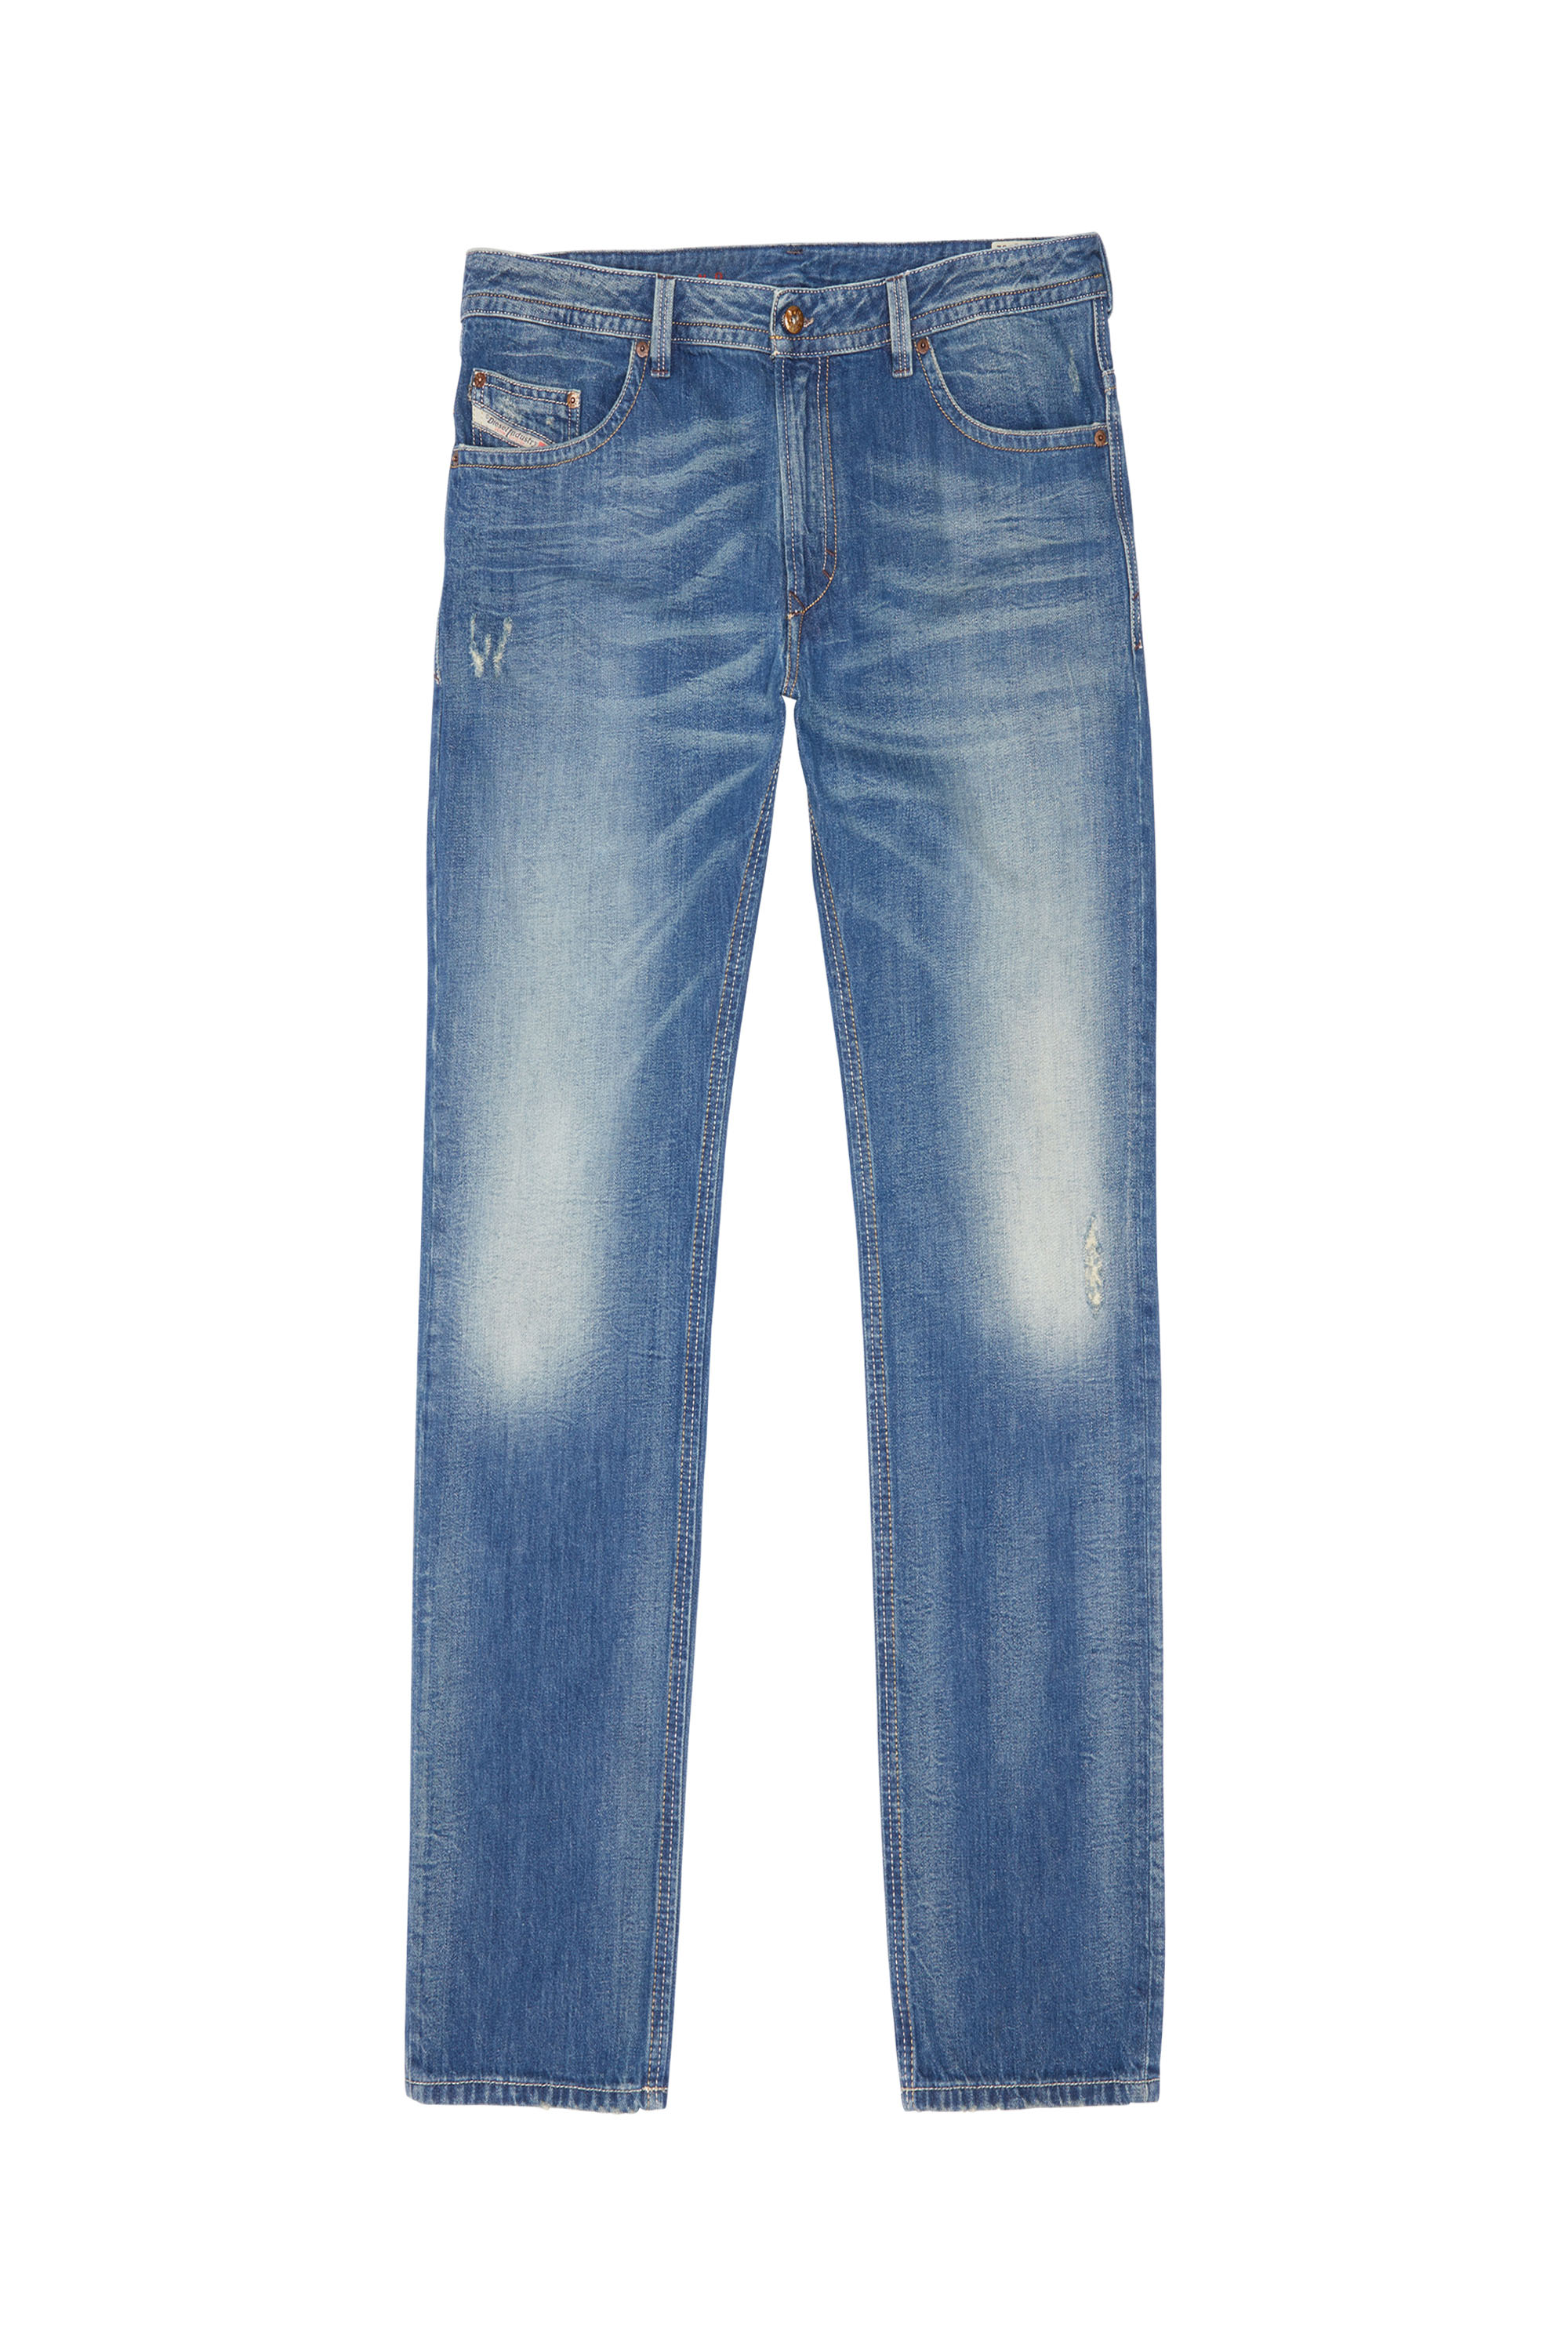 THAVAR, Medium blue - Jeans